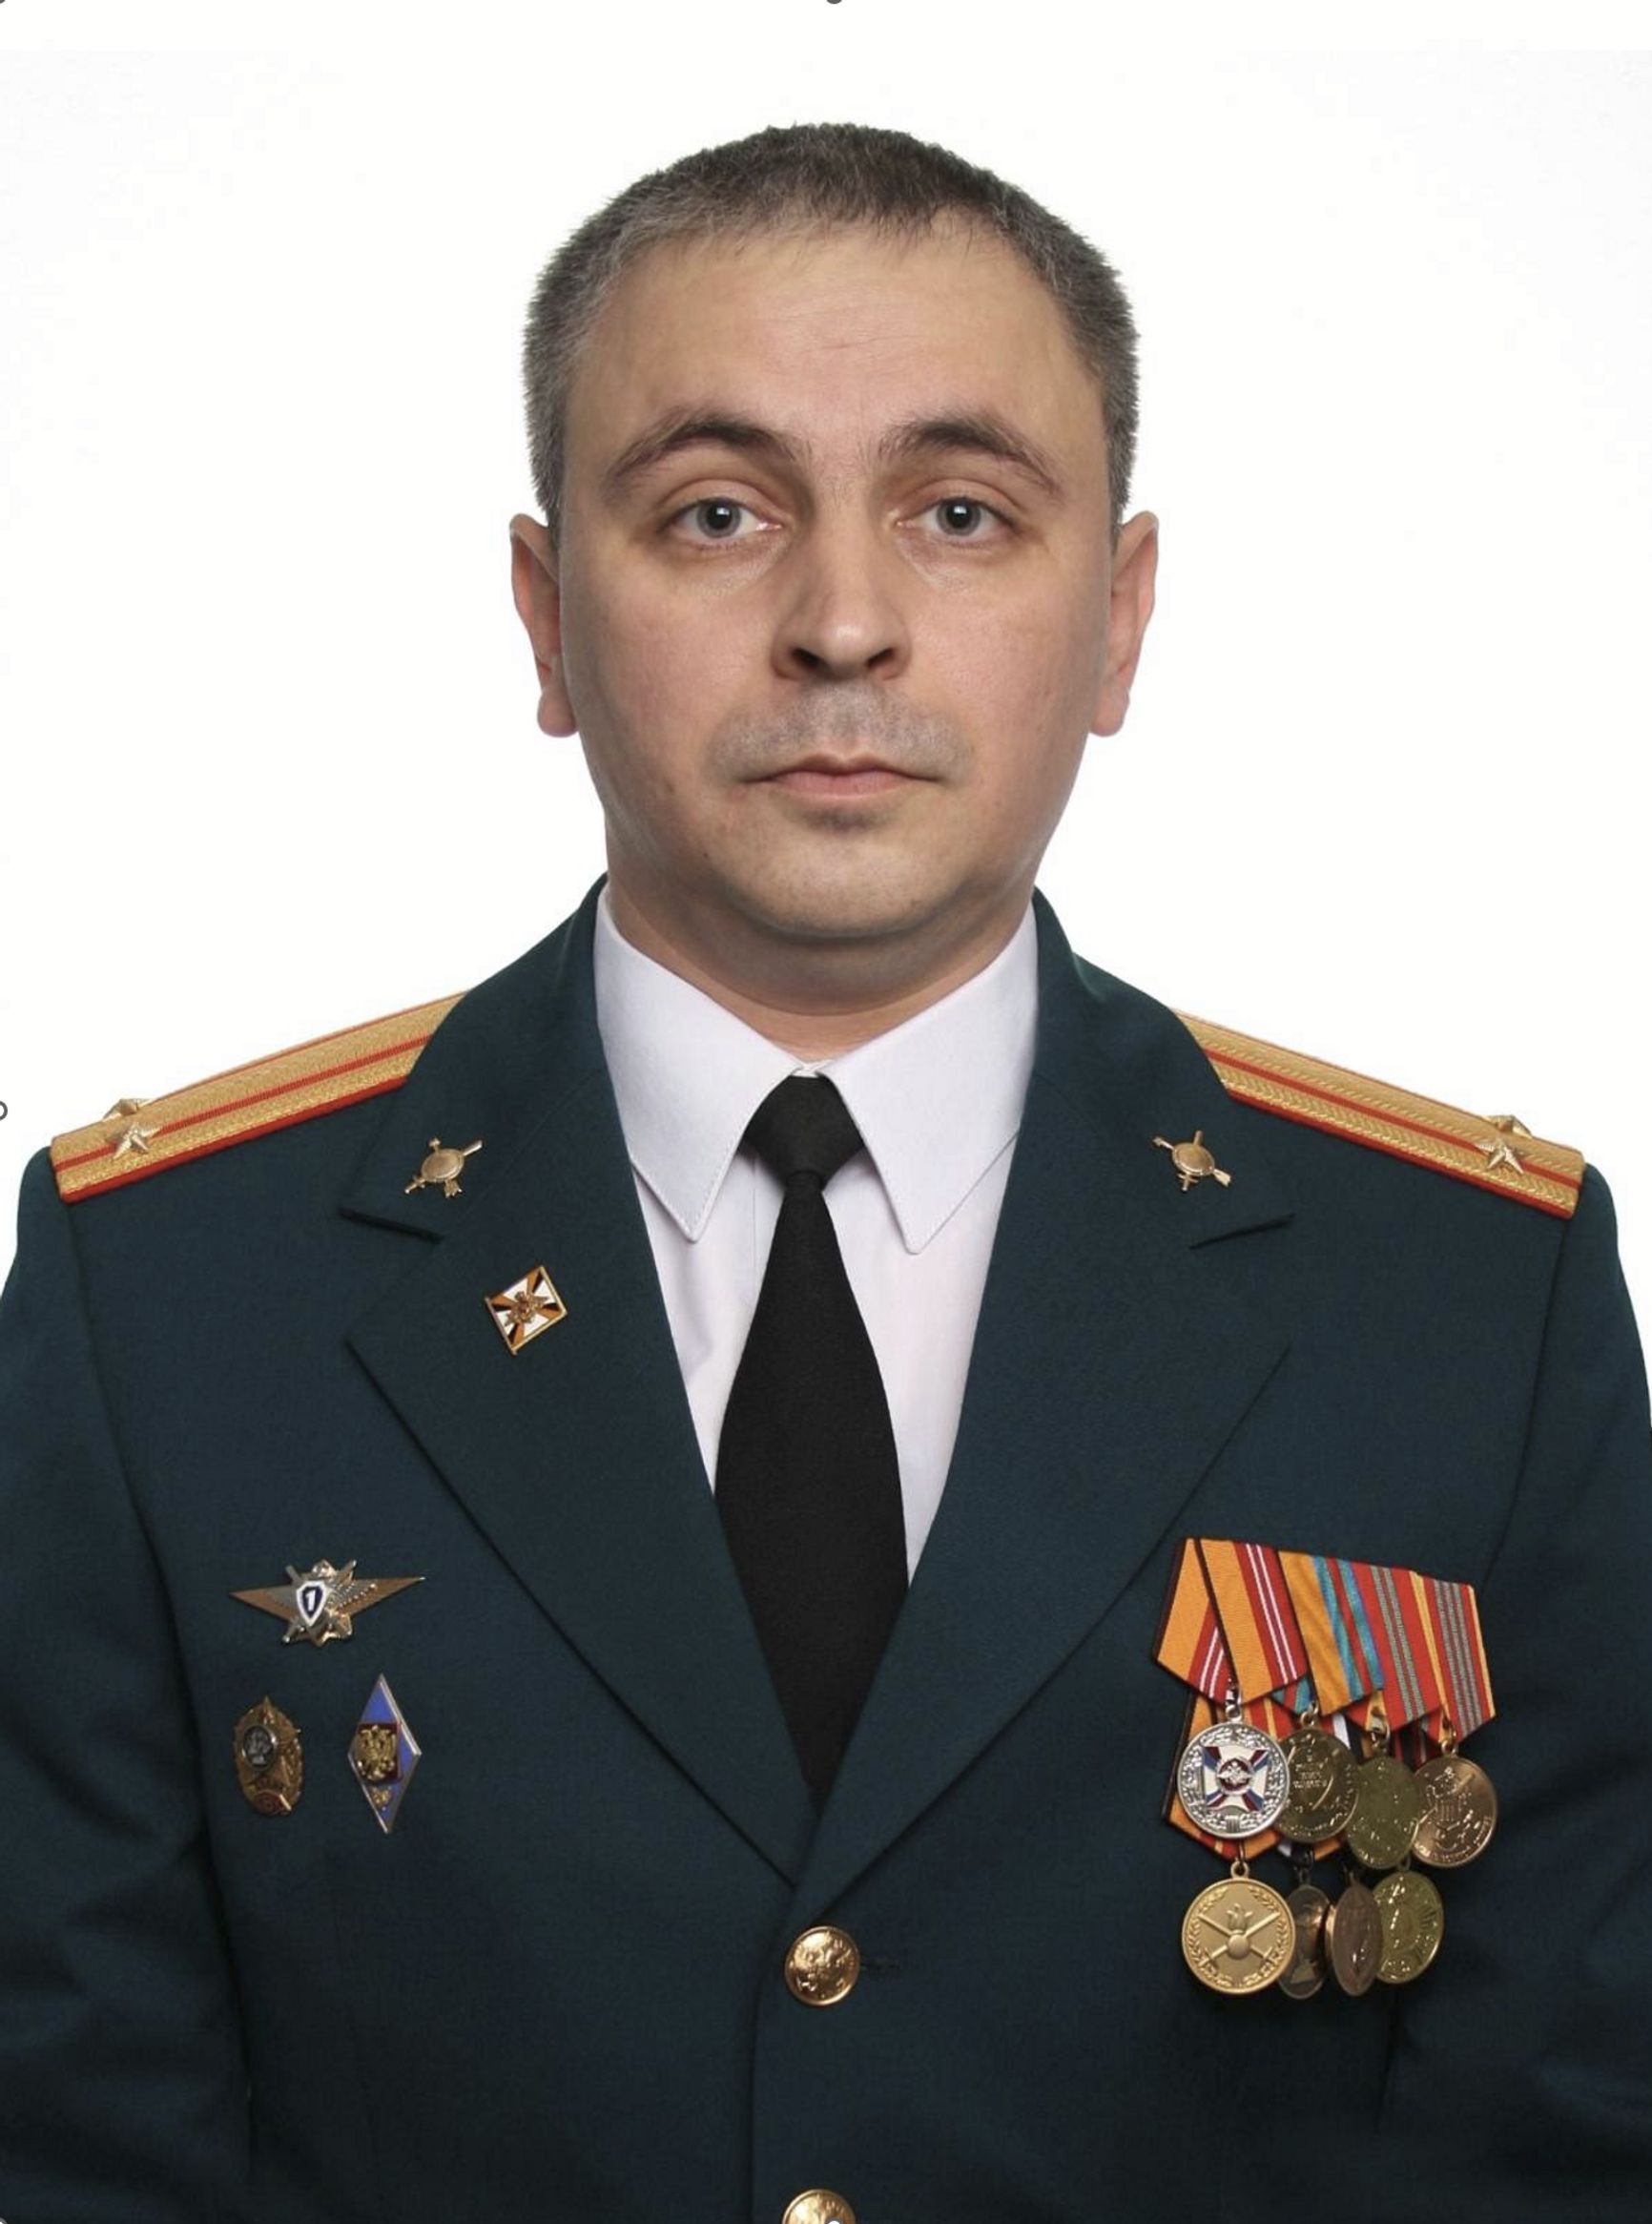 Игорь Багнюк, фото предоставлено коллегой. Награжден среди прочего медалями «За воинскую доблесть» 1-й степени и за участние в военной операции в Сирии